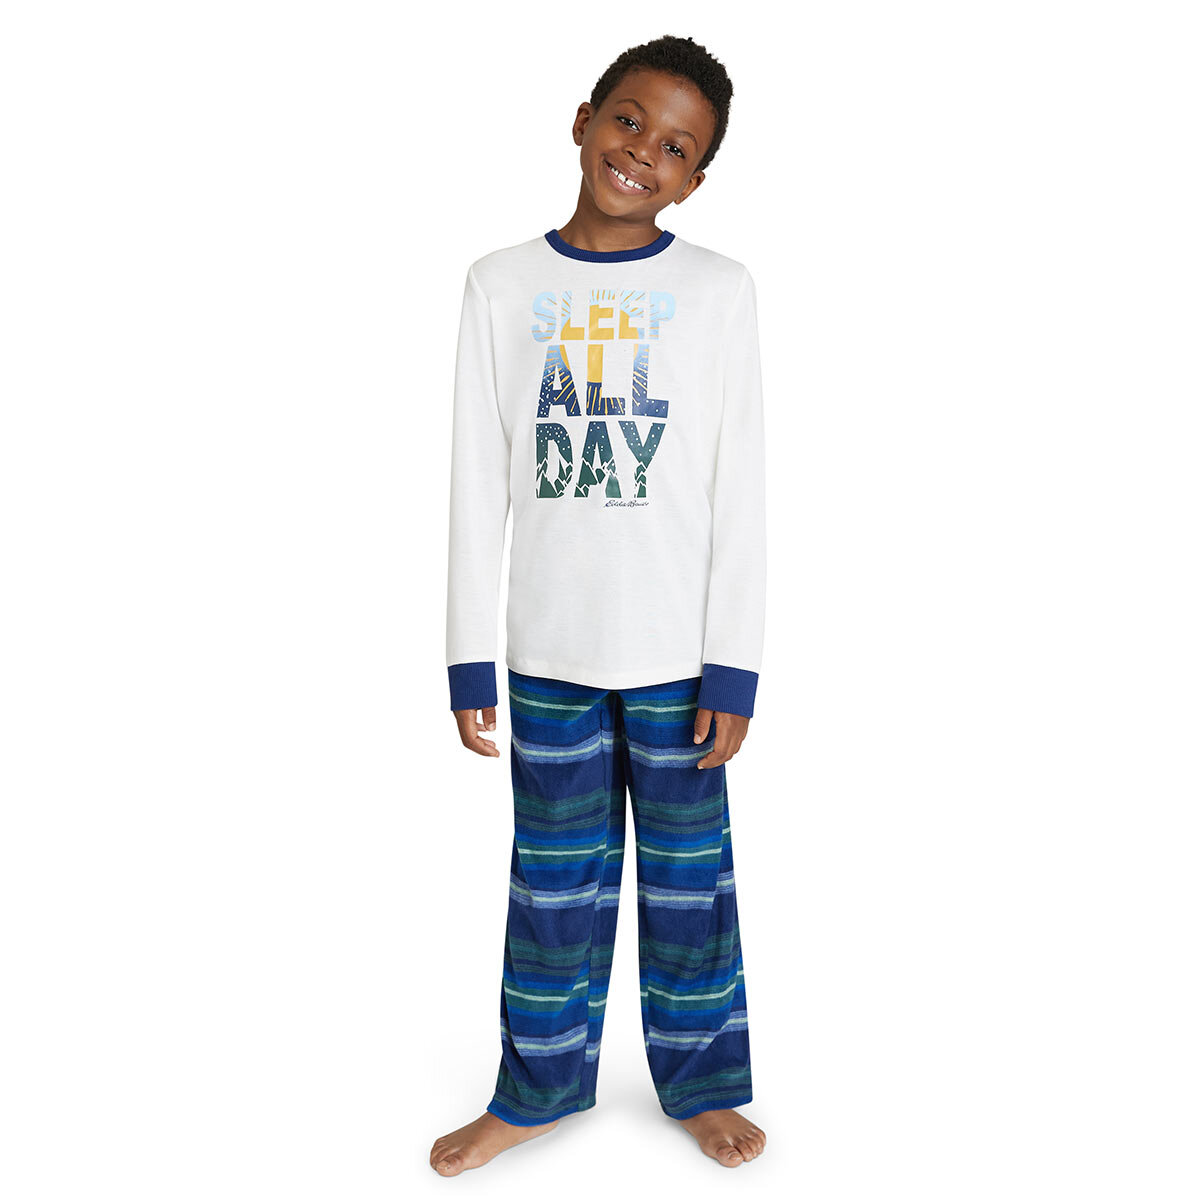 Eddie Bauer Children's 4 Piece Pyjama Set in Navy Sleep